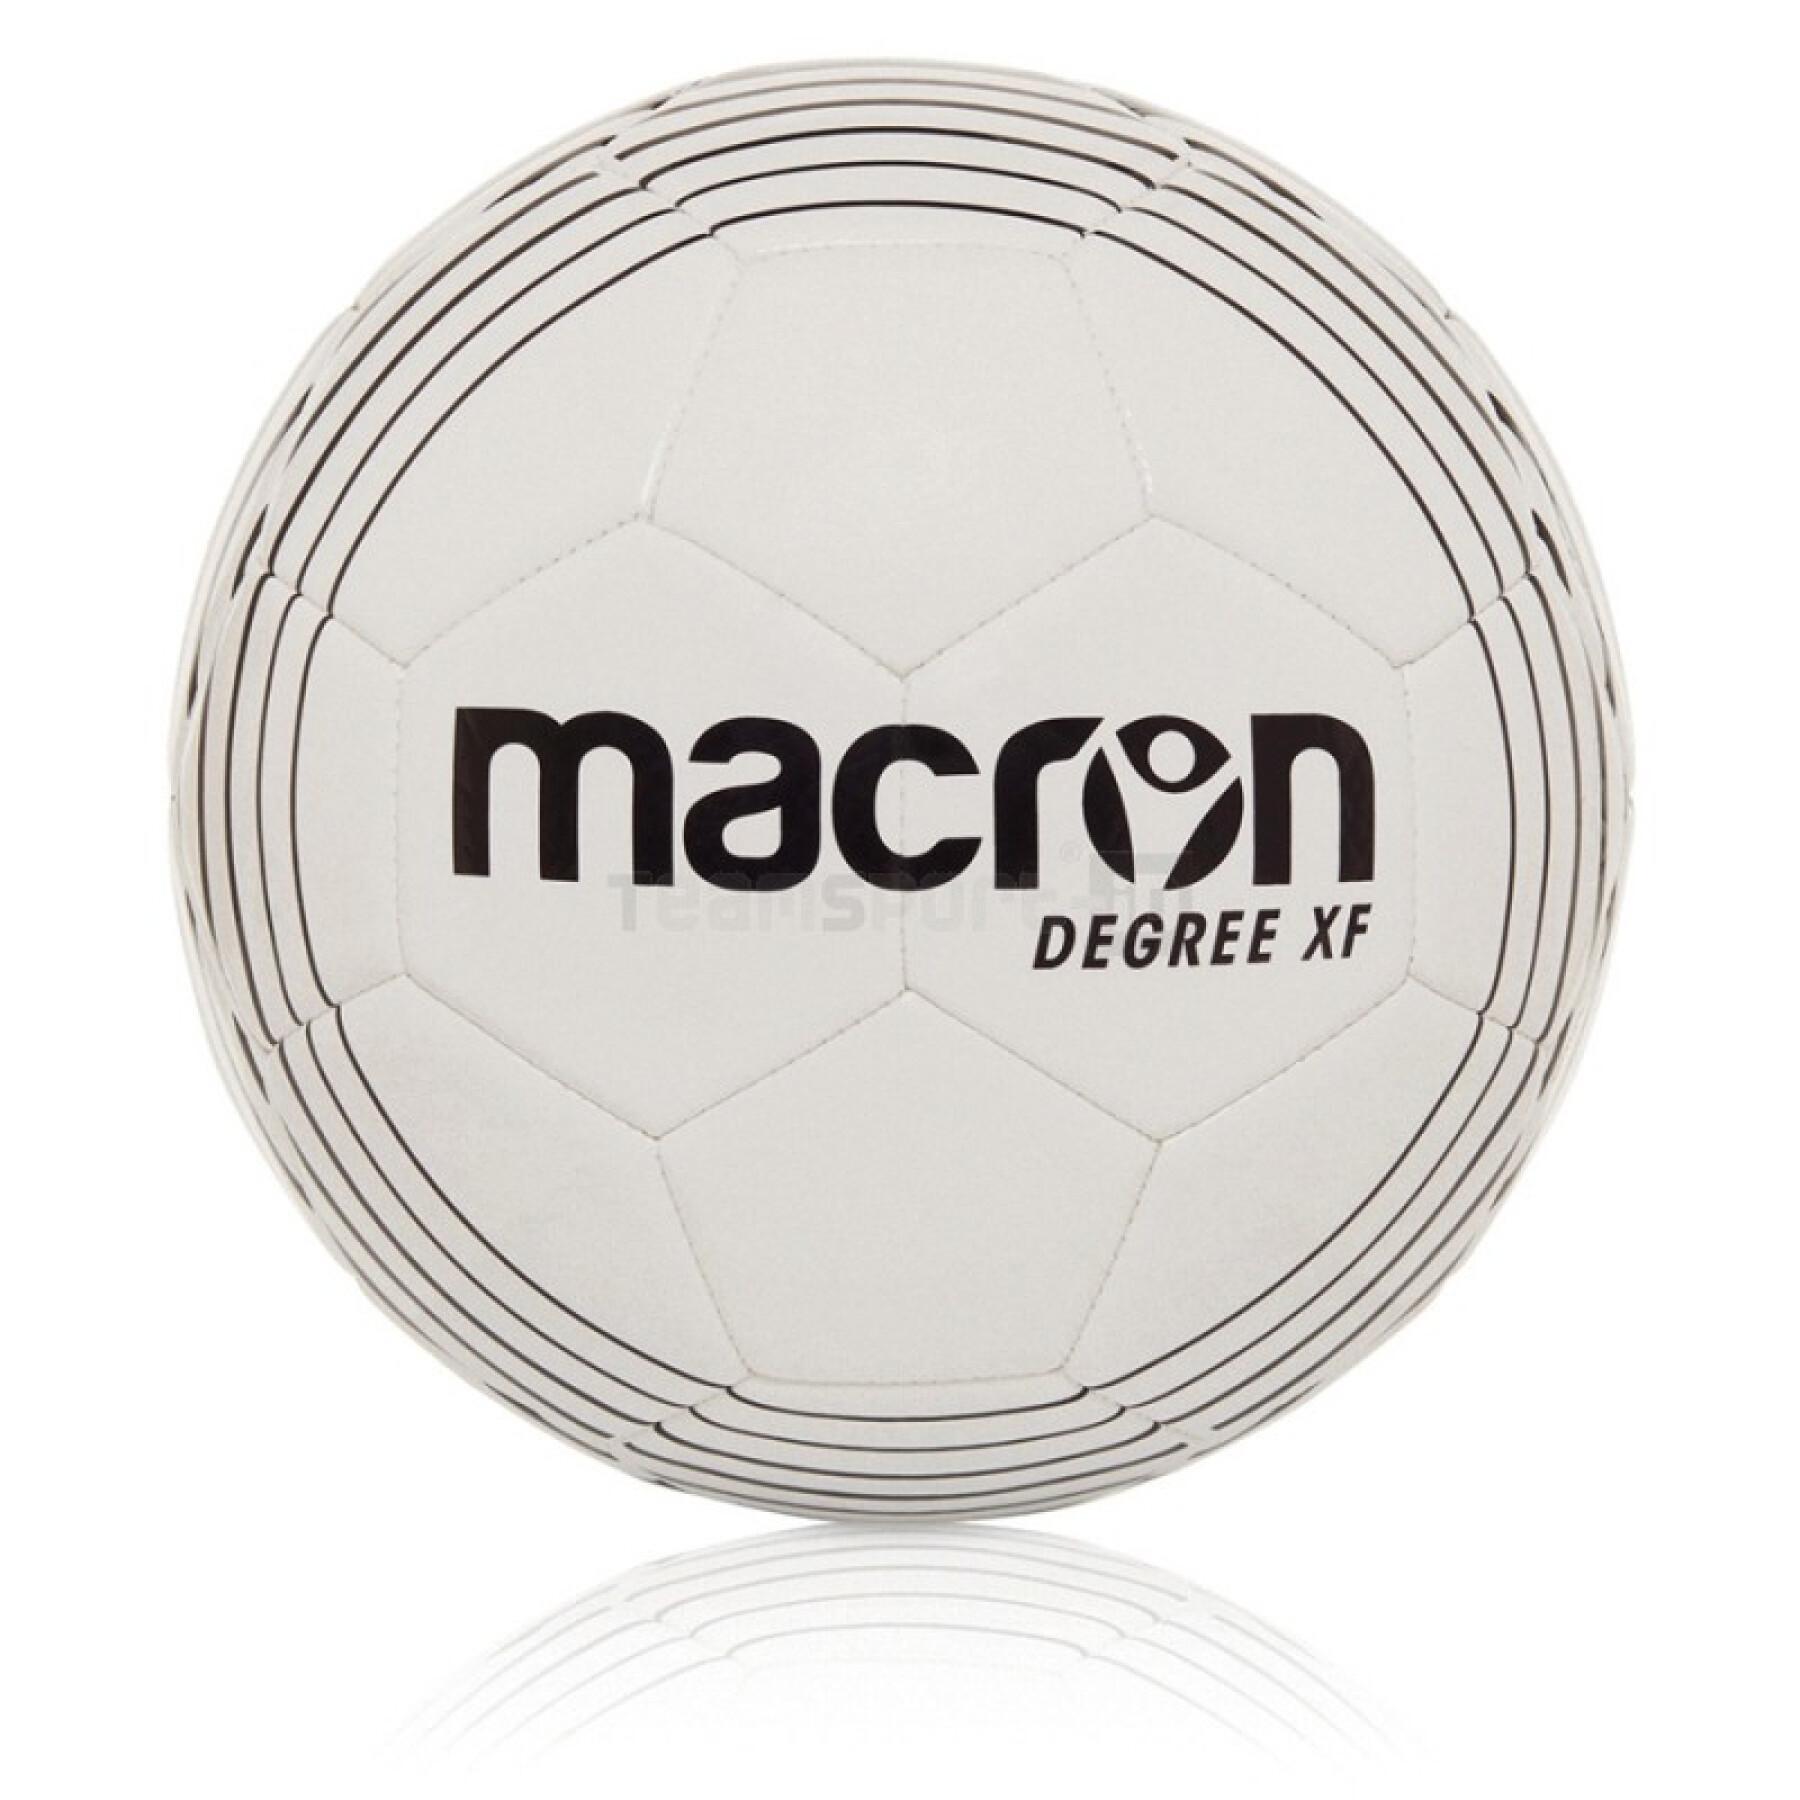 Ballon Macron degree xf (12 pcs)